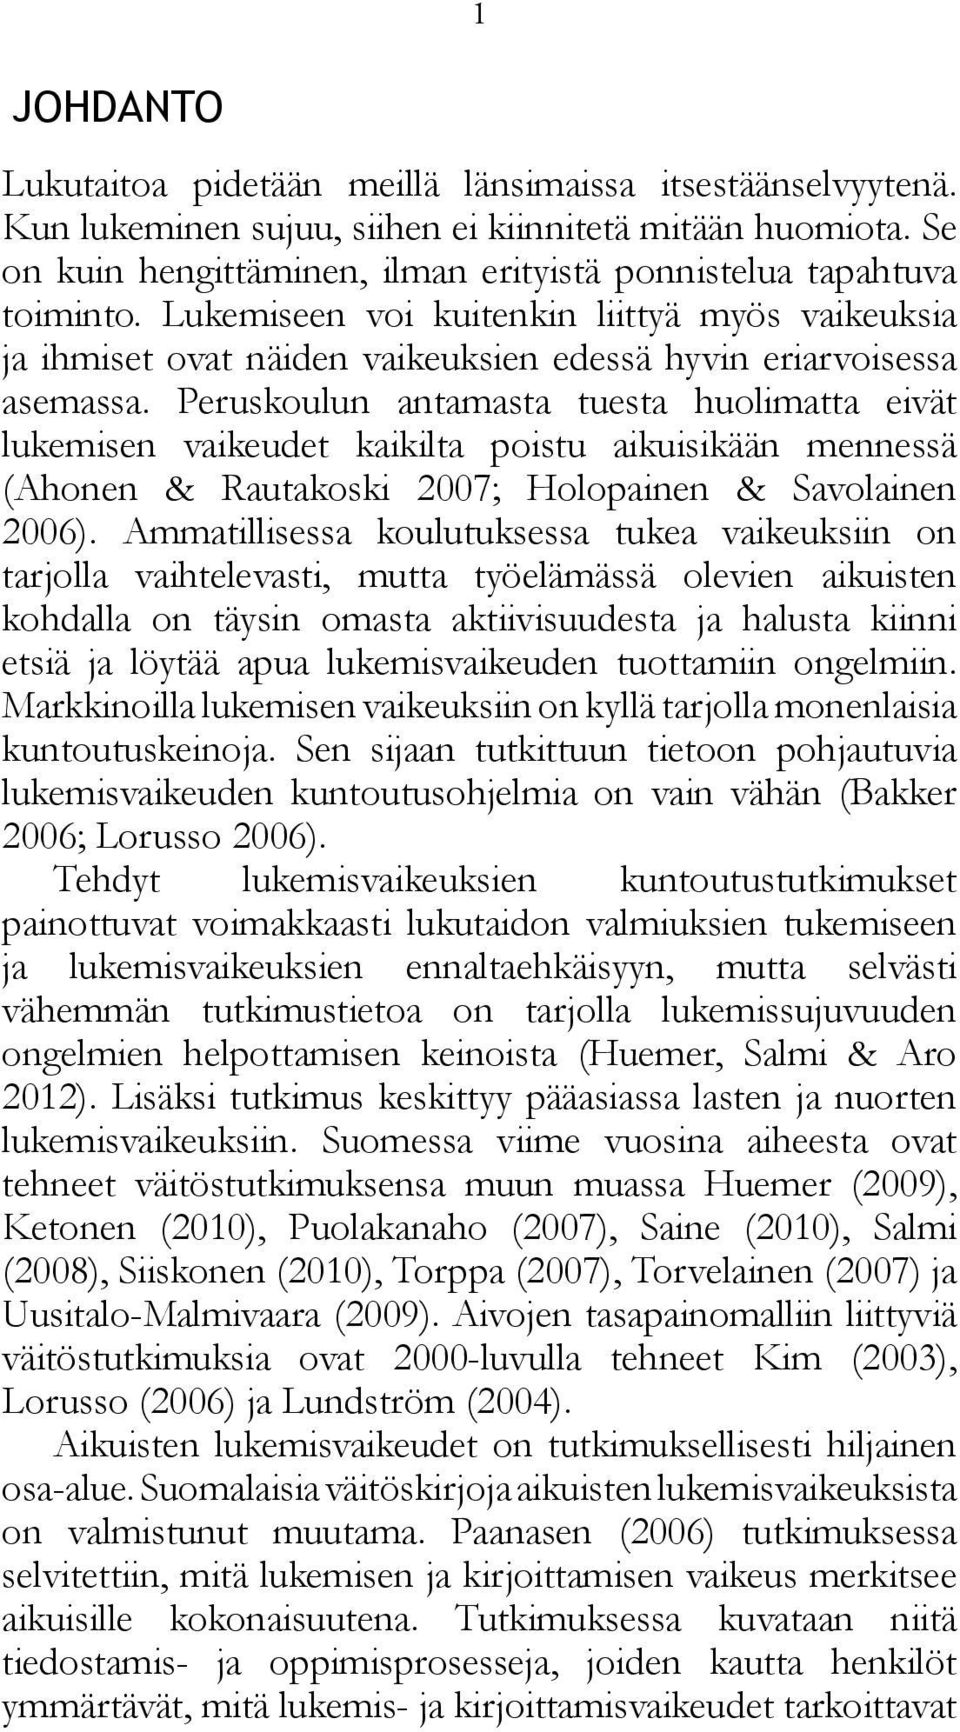 Peruskoulun antamasta tuesta huolimatta eivät lukemisen vaikeudet kaikilta poistu aikuisikään mennessä (Ahonen & Rautakoski 2007; Holopainen & Savolainen 2006).